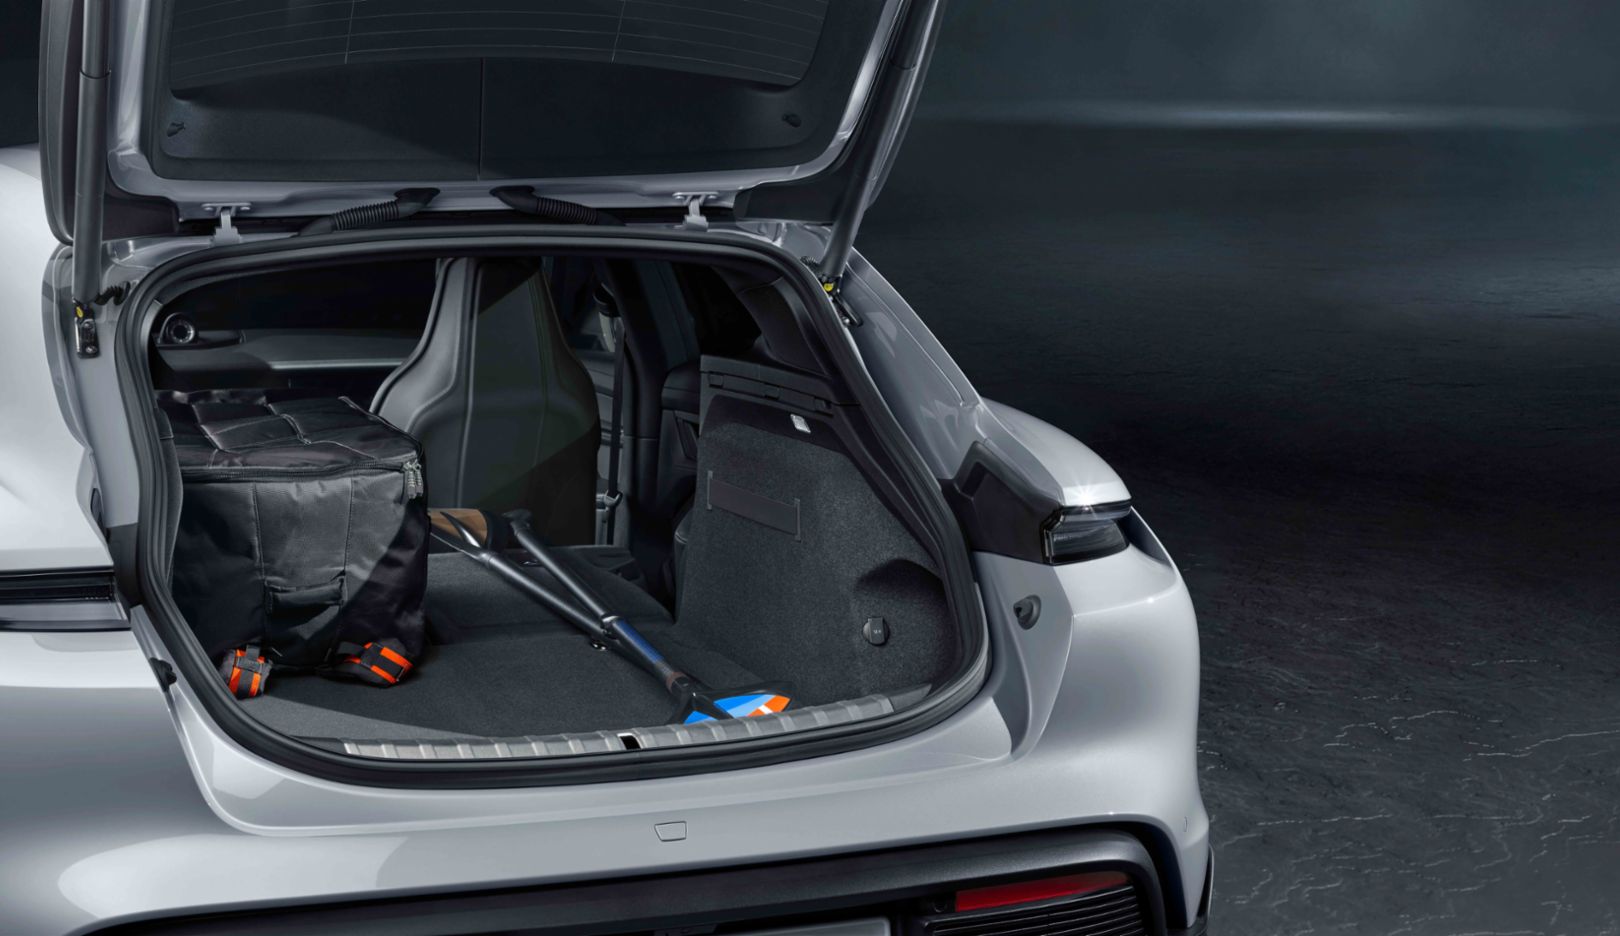 Raum für mehr: Das Kofferraumvolumen lässt sich bei umgelegten Sitzen auf bis zu 1.200 Liter erweitern.